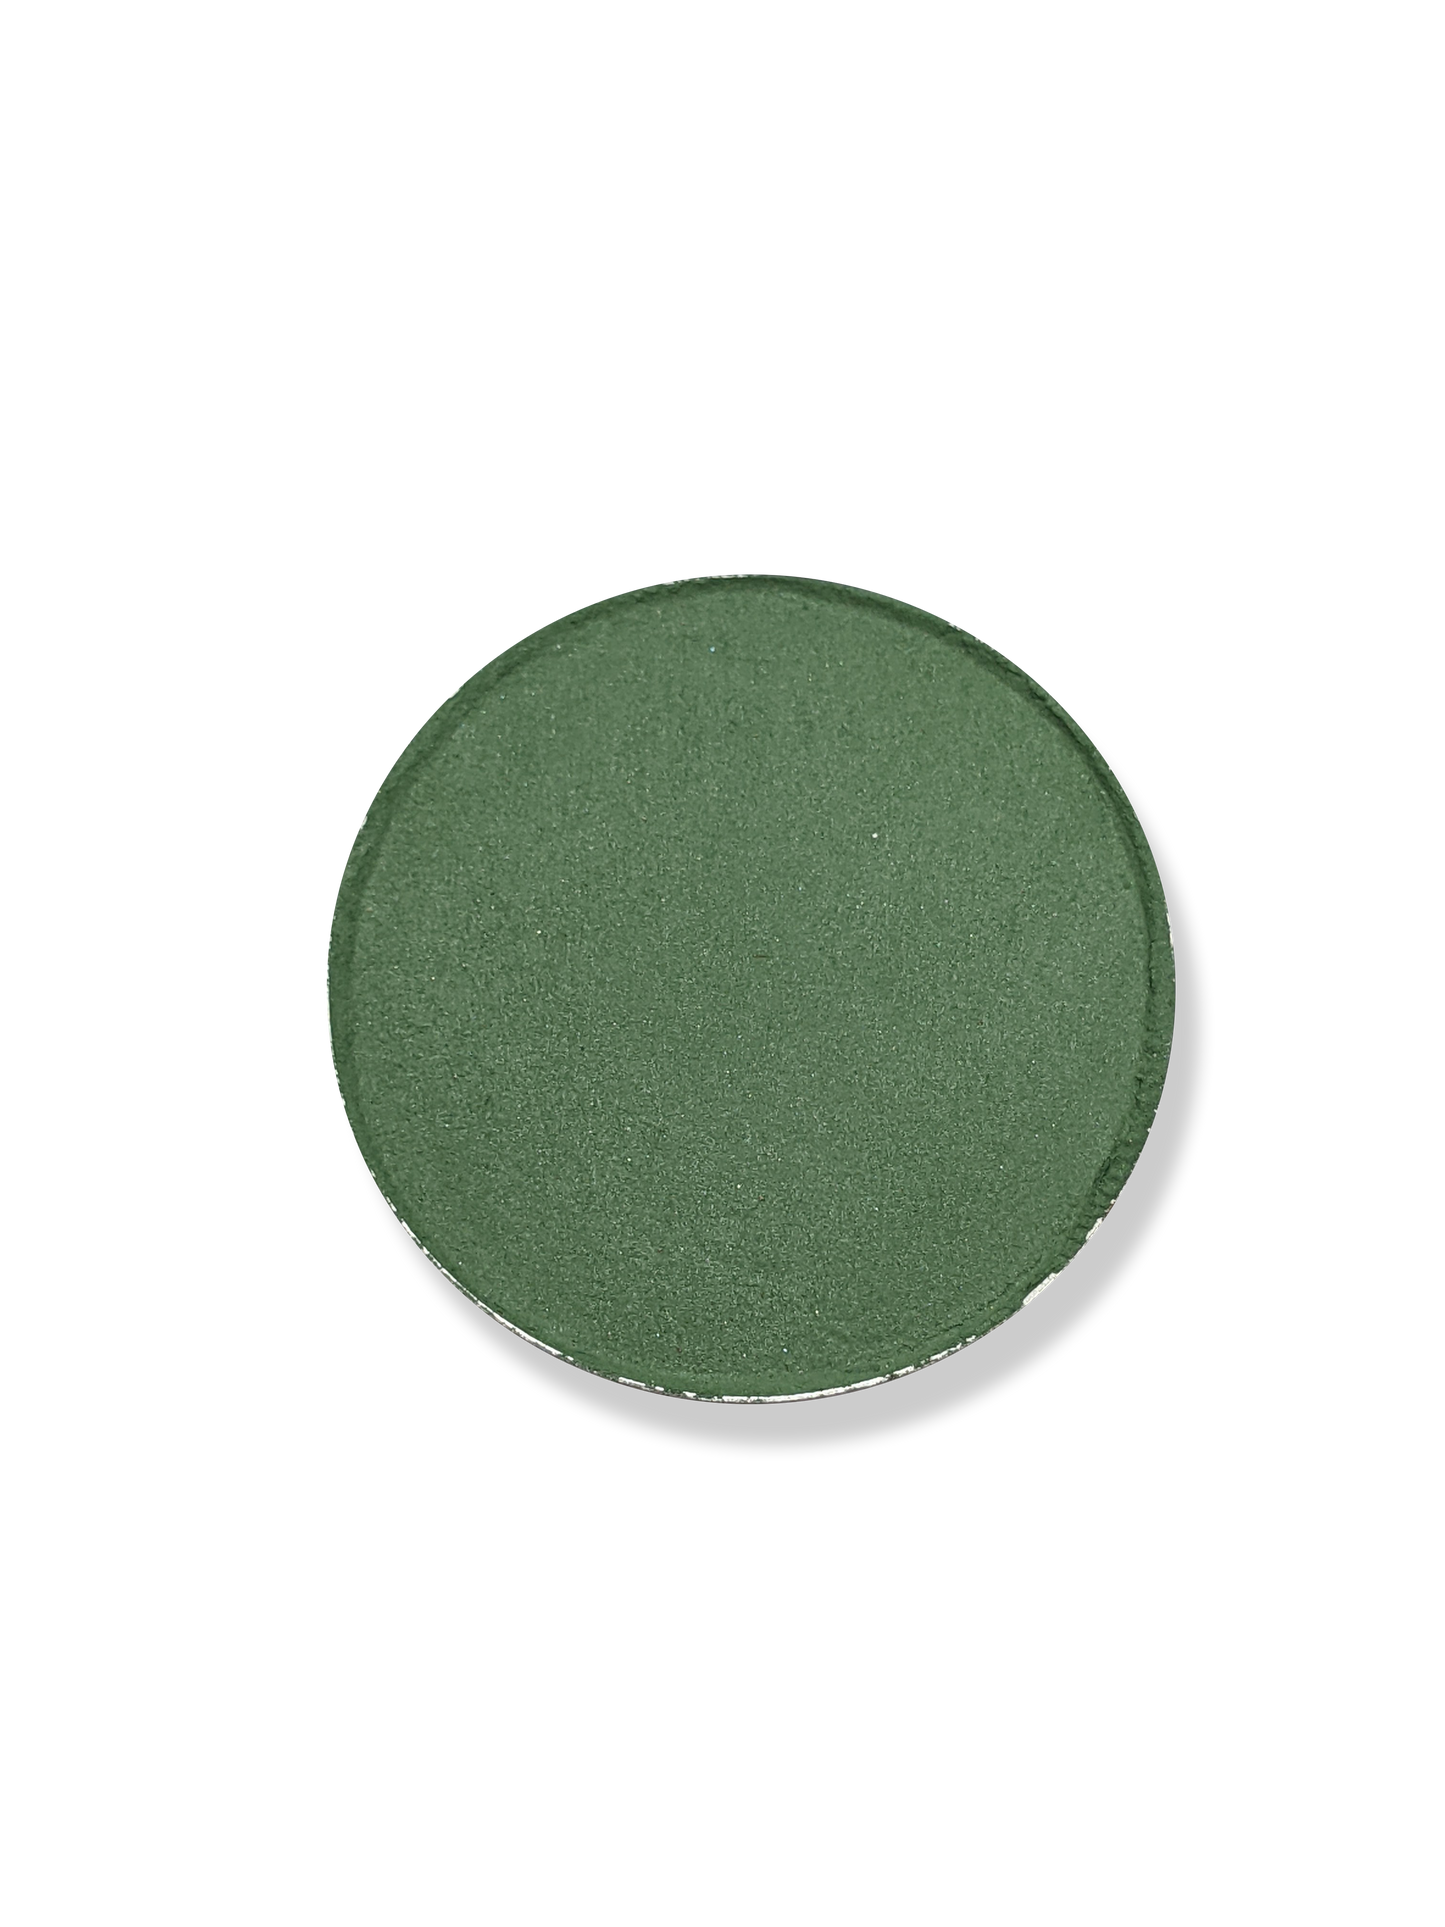 Algae - Eyeshadow Matte Blue Green